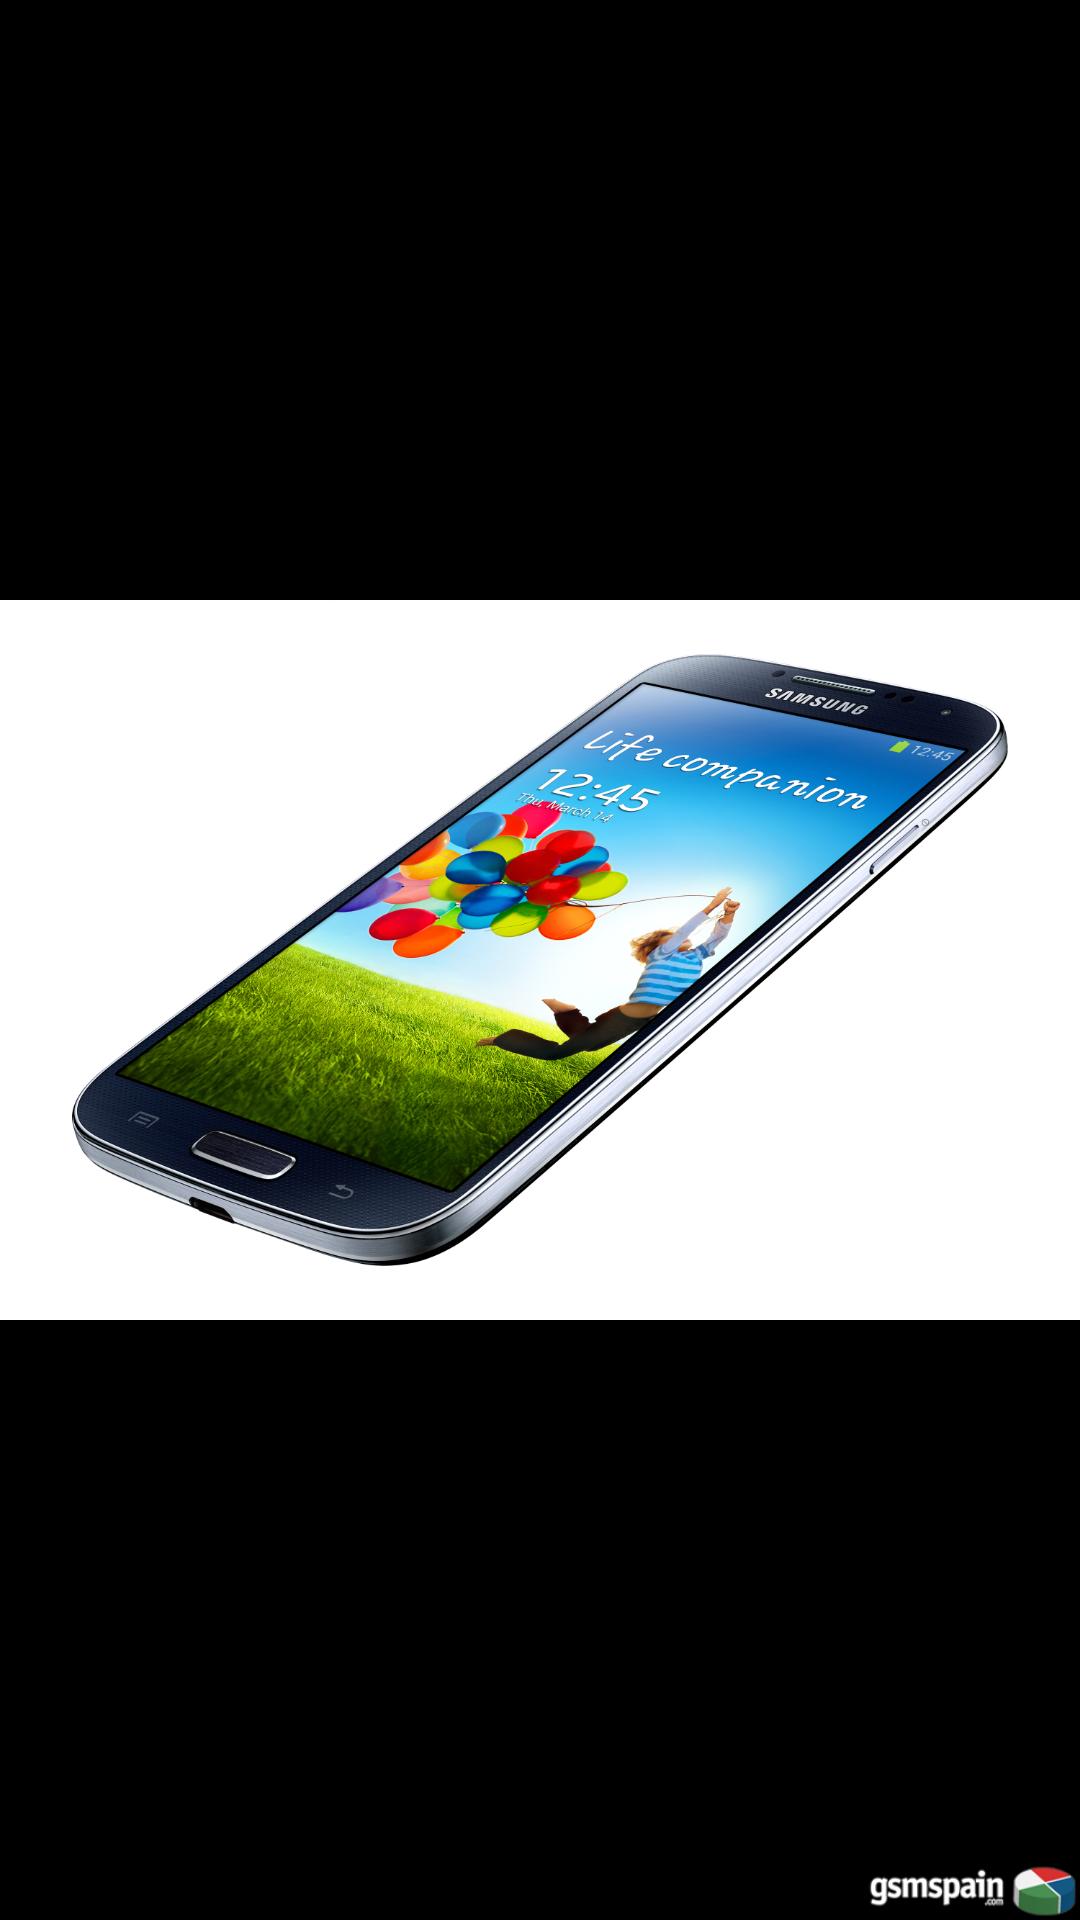 [VENDO] Samsung galaxy s4 libre de fabrica y nuevo